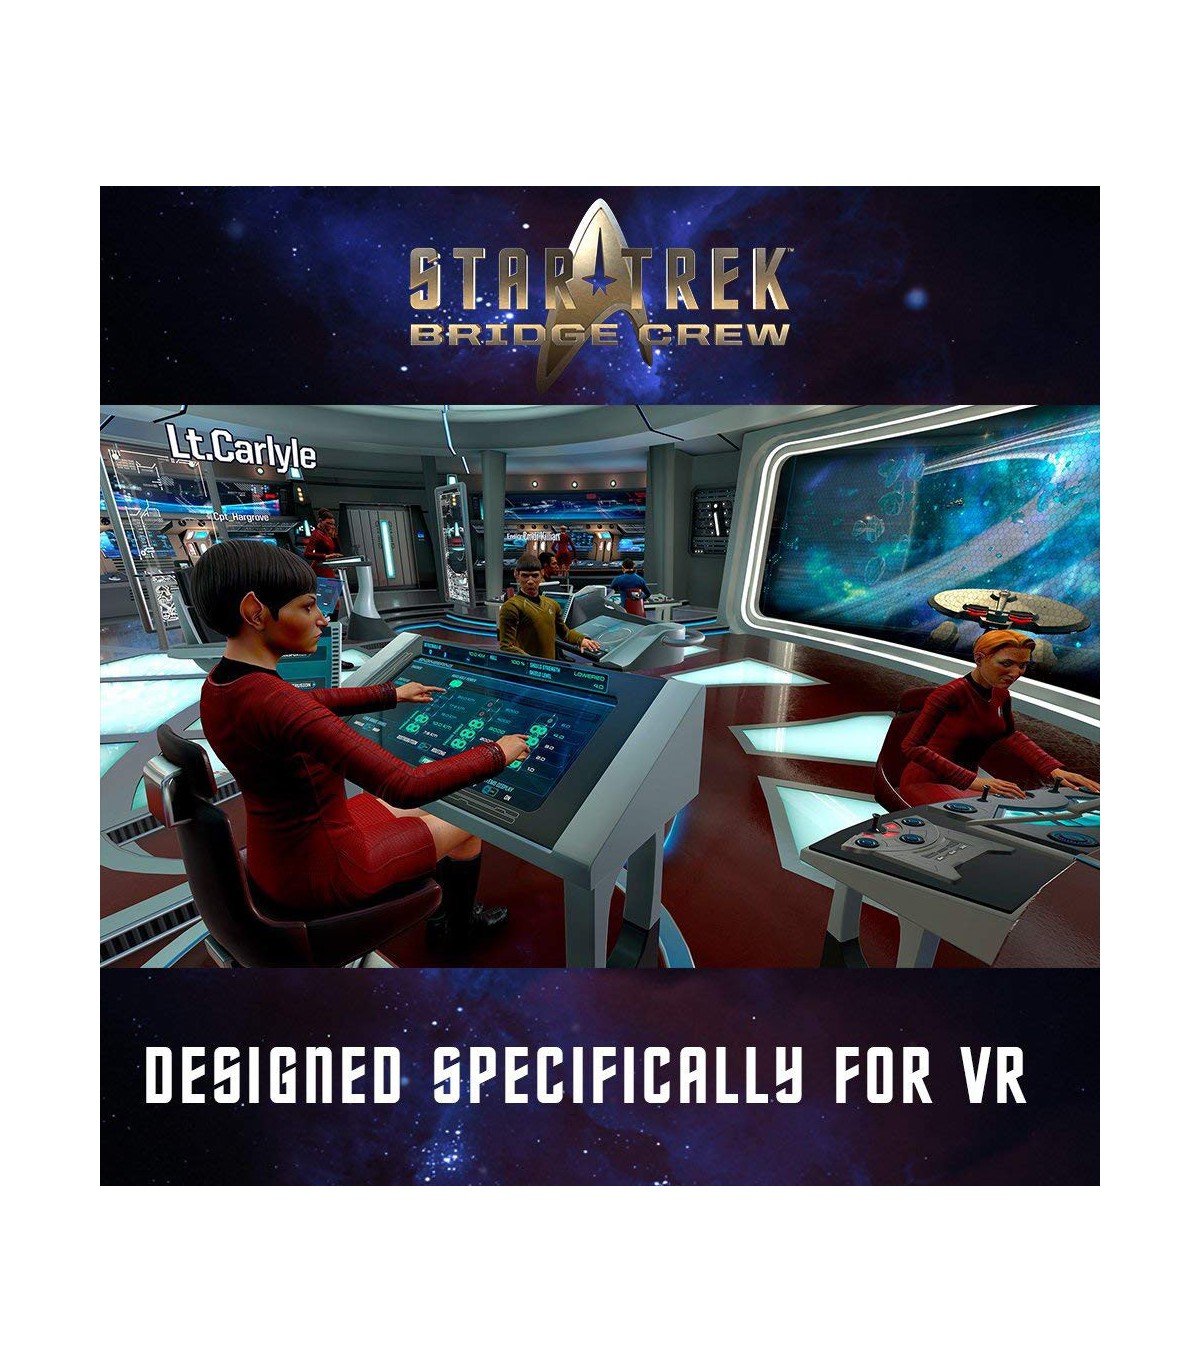 بازی Star Trek: Bridge Crew - پلی استیشن وی آر